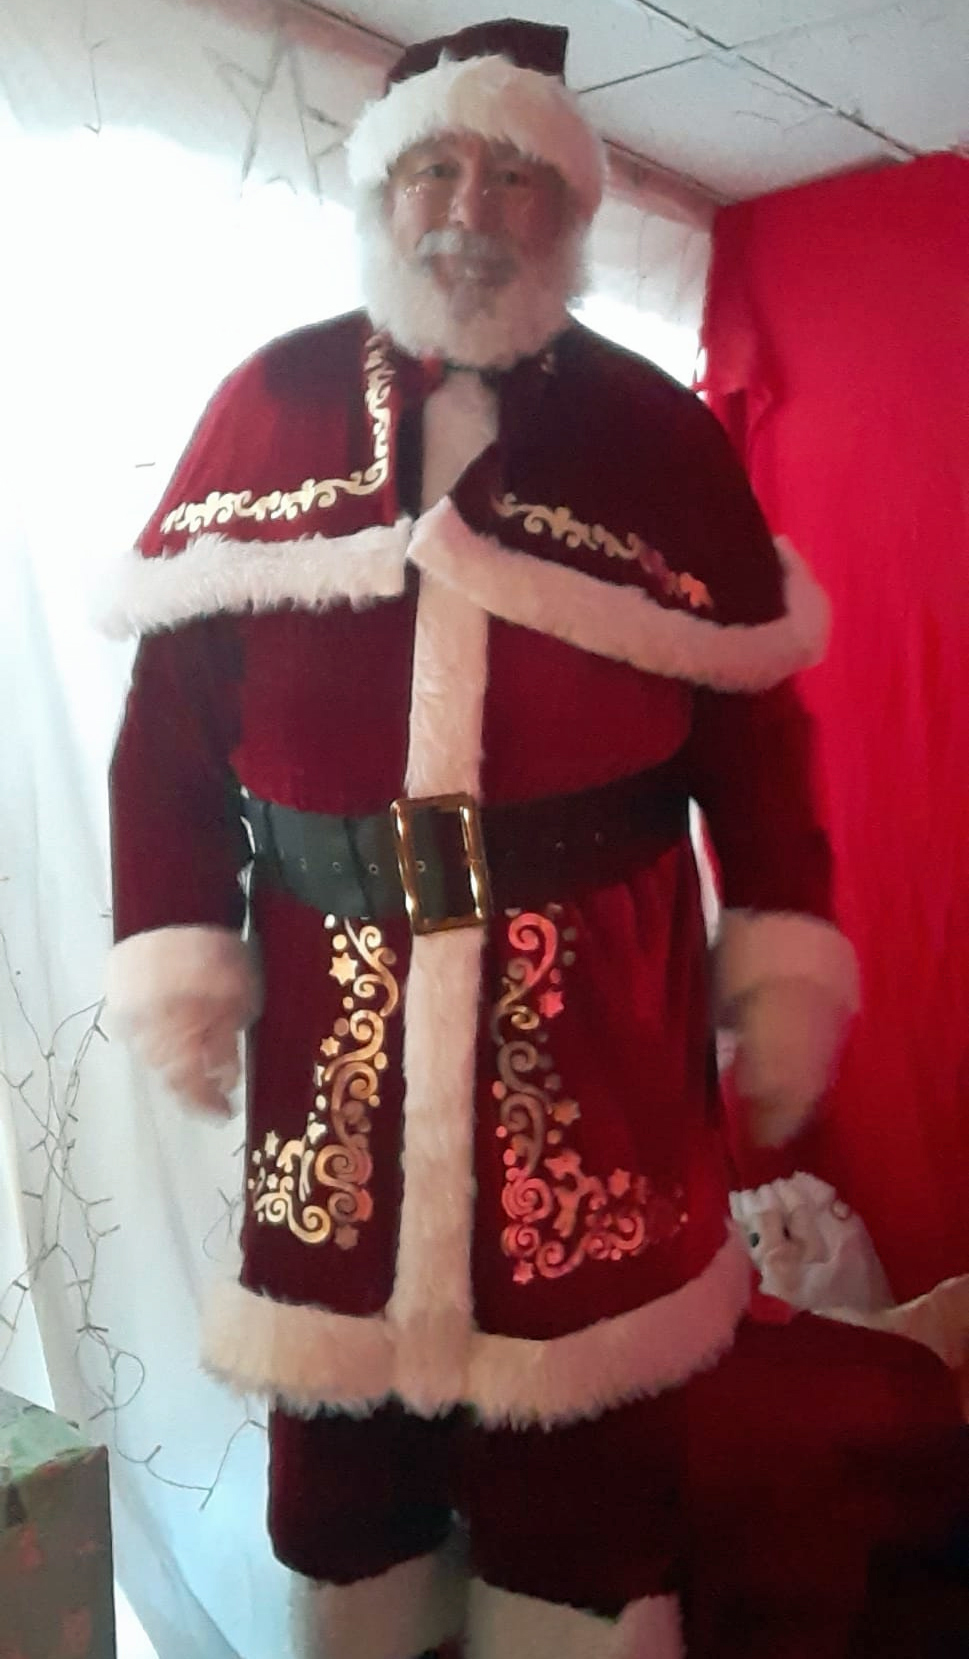 Santa Claus visits Clevedon...